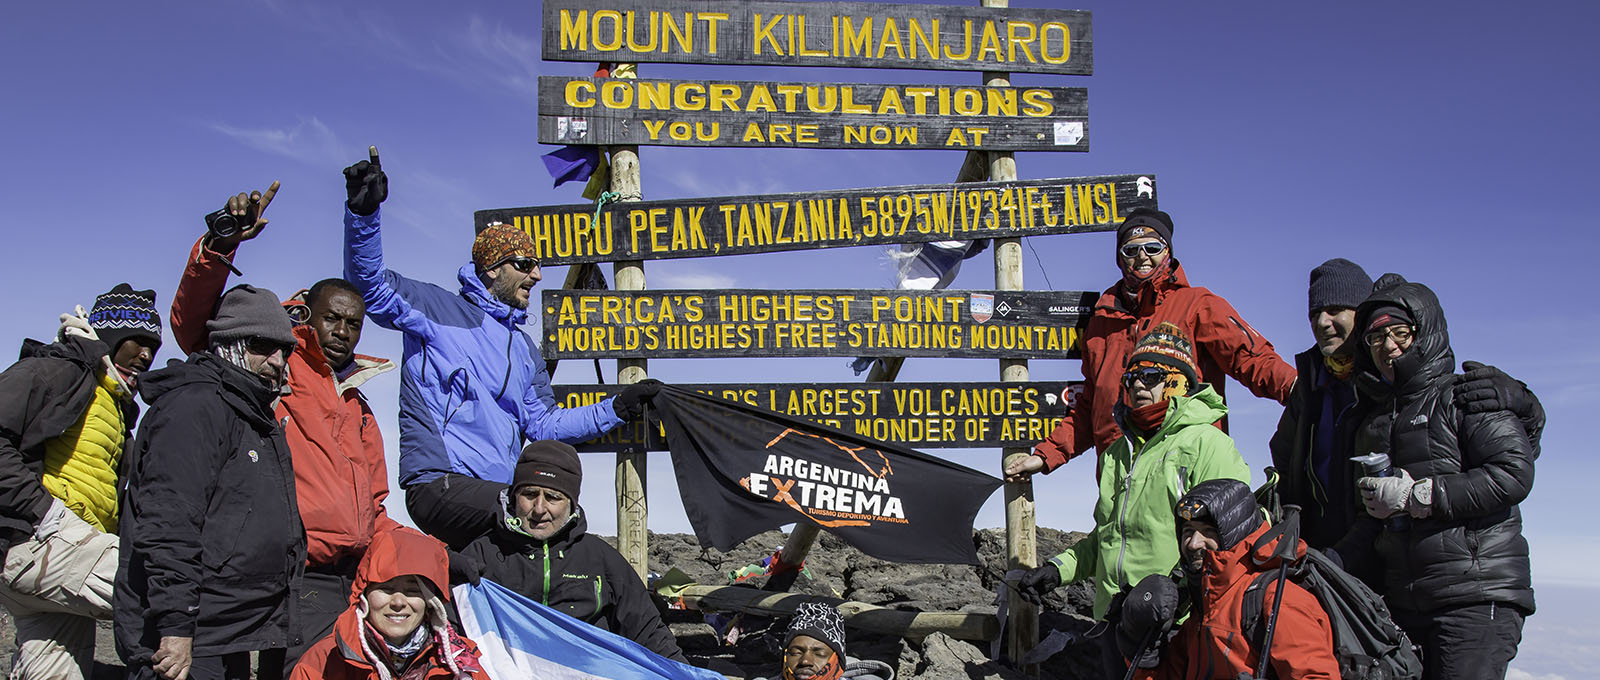 Expedición Monte Kilimanjaro